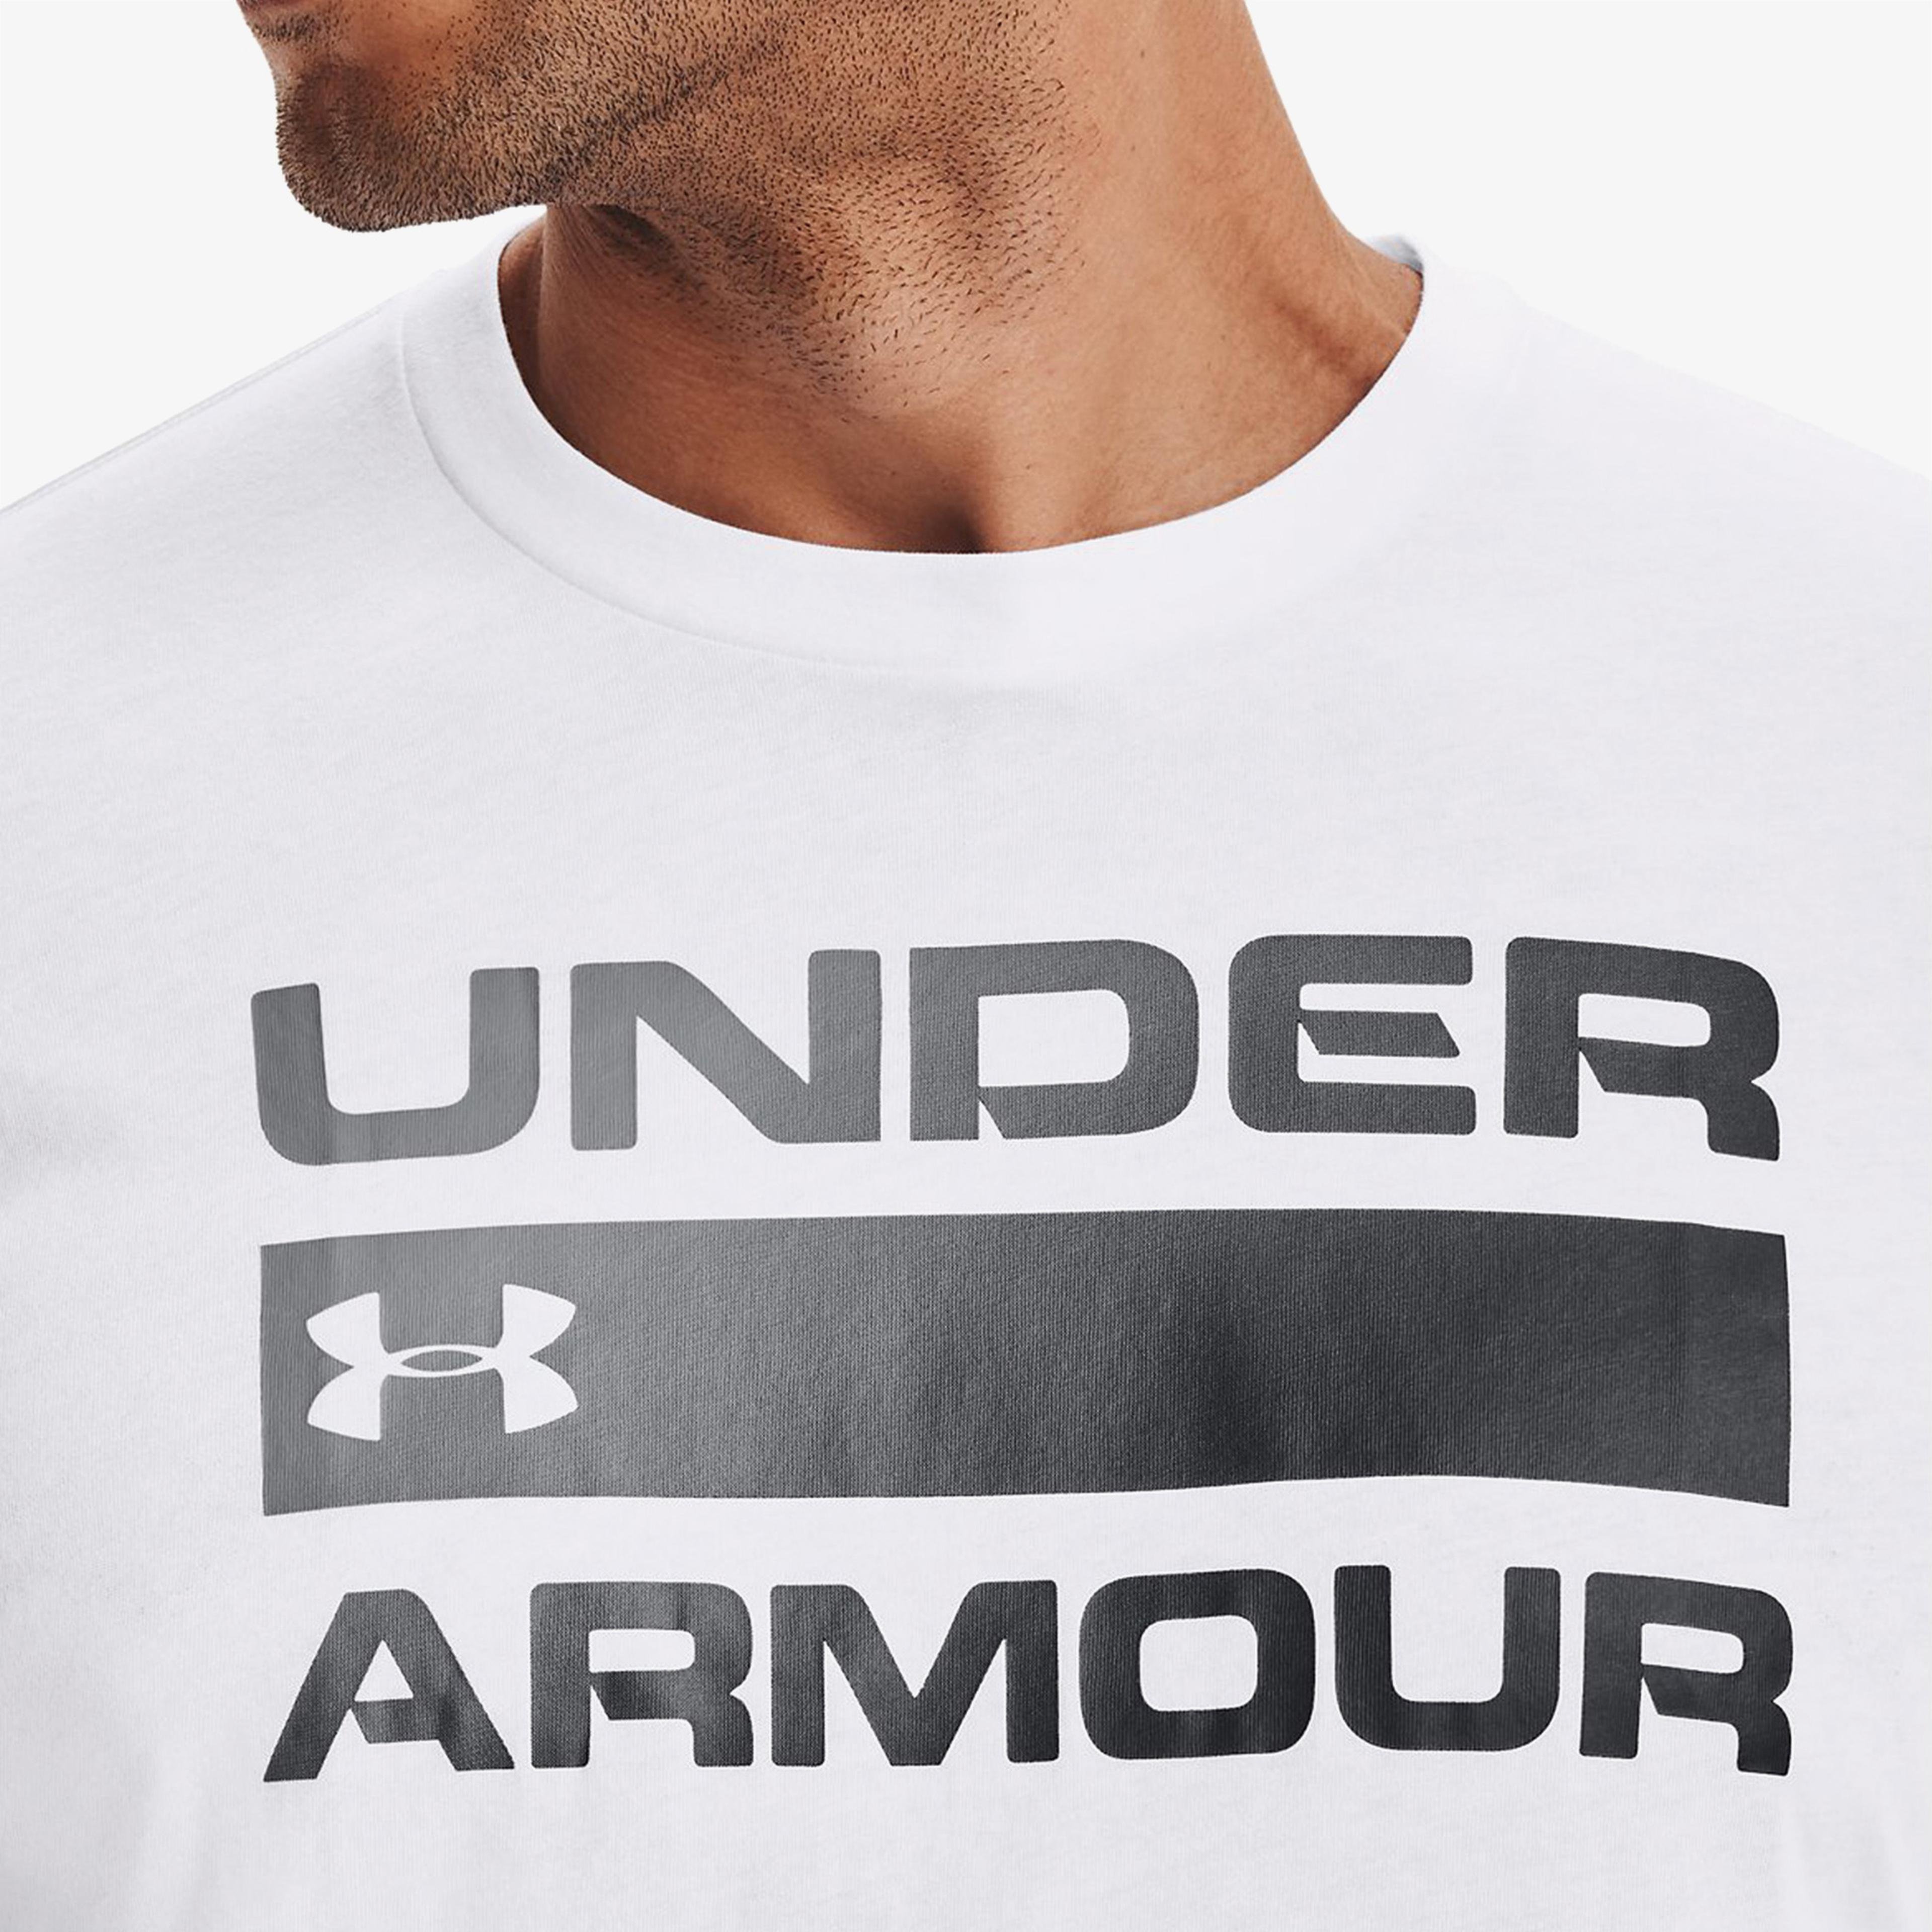 Under Armour Team Issue Wordmark Erkek Beyaz T-Shirt